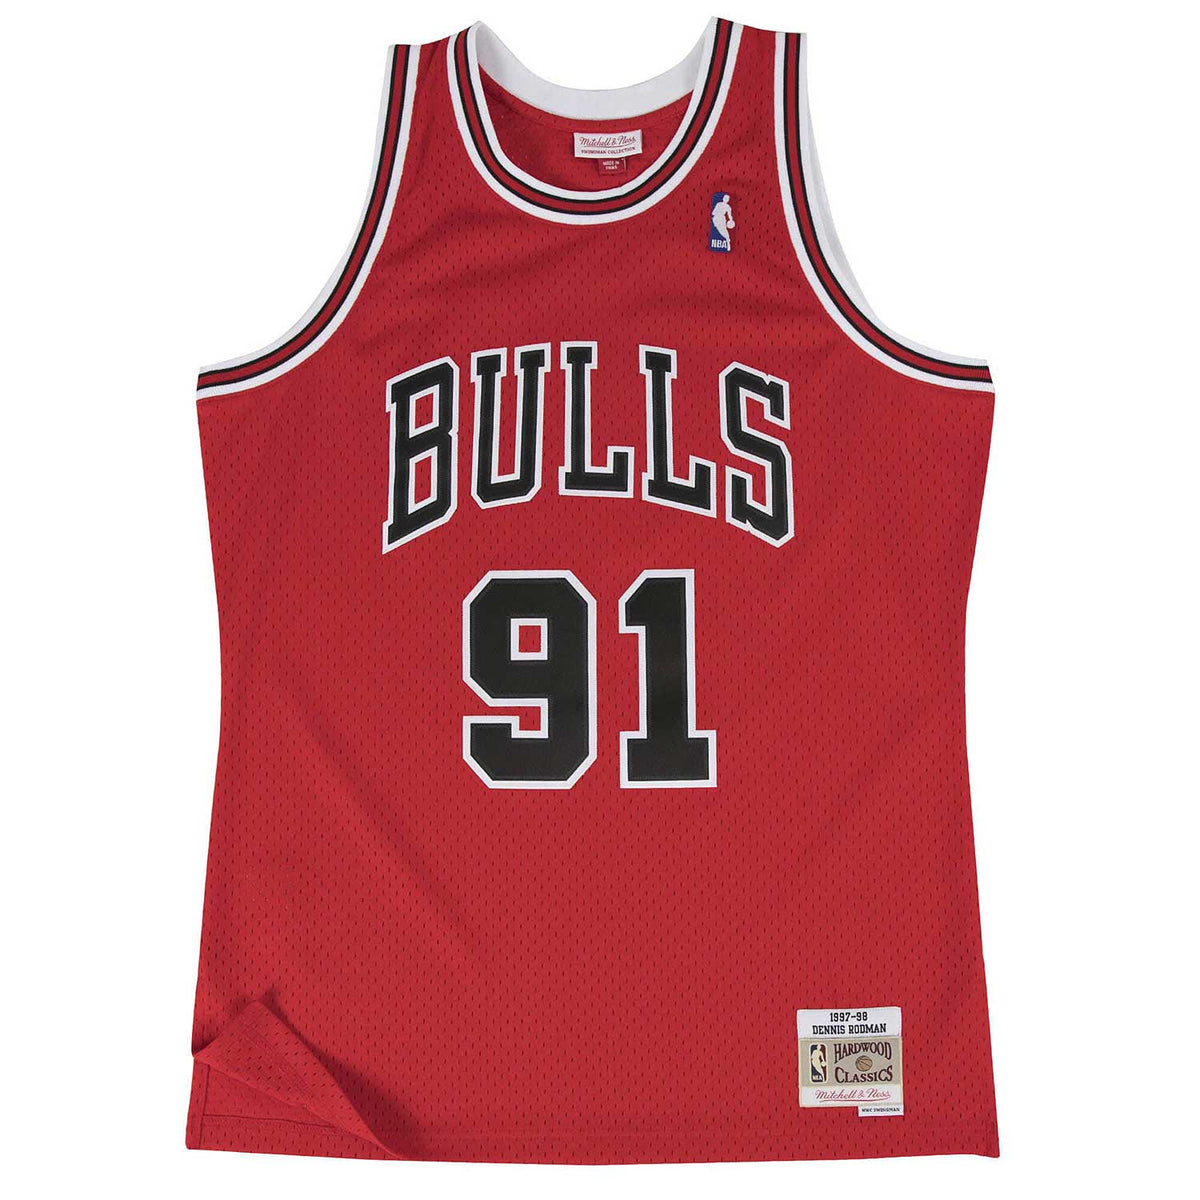 Chicago bulls Dennis Rodman jersey for Sale in Schiller Park, IL